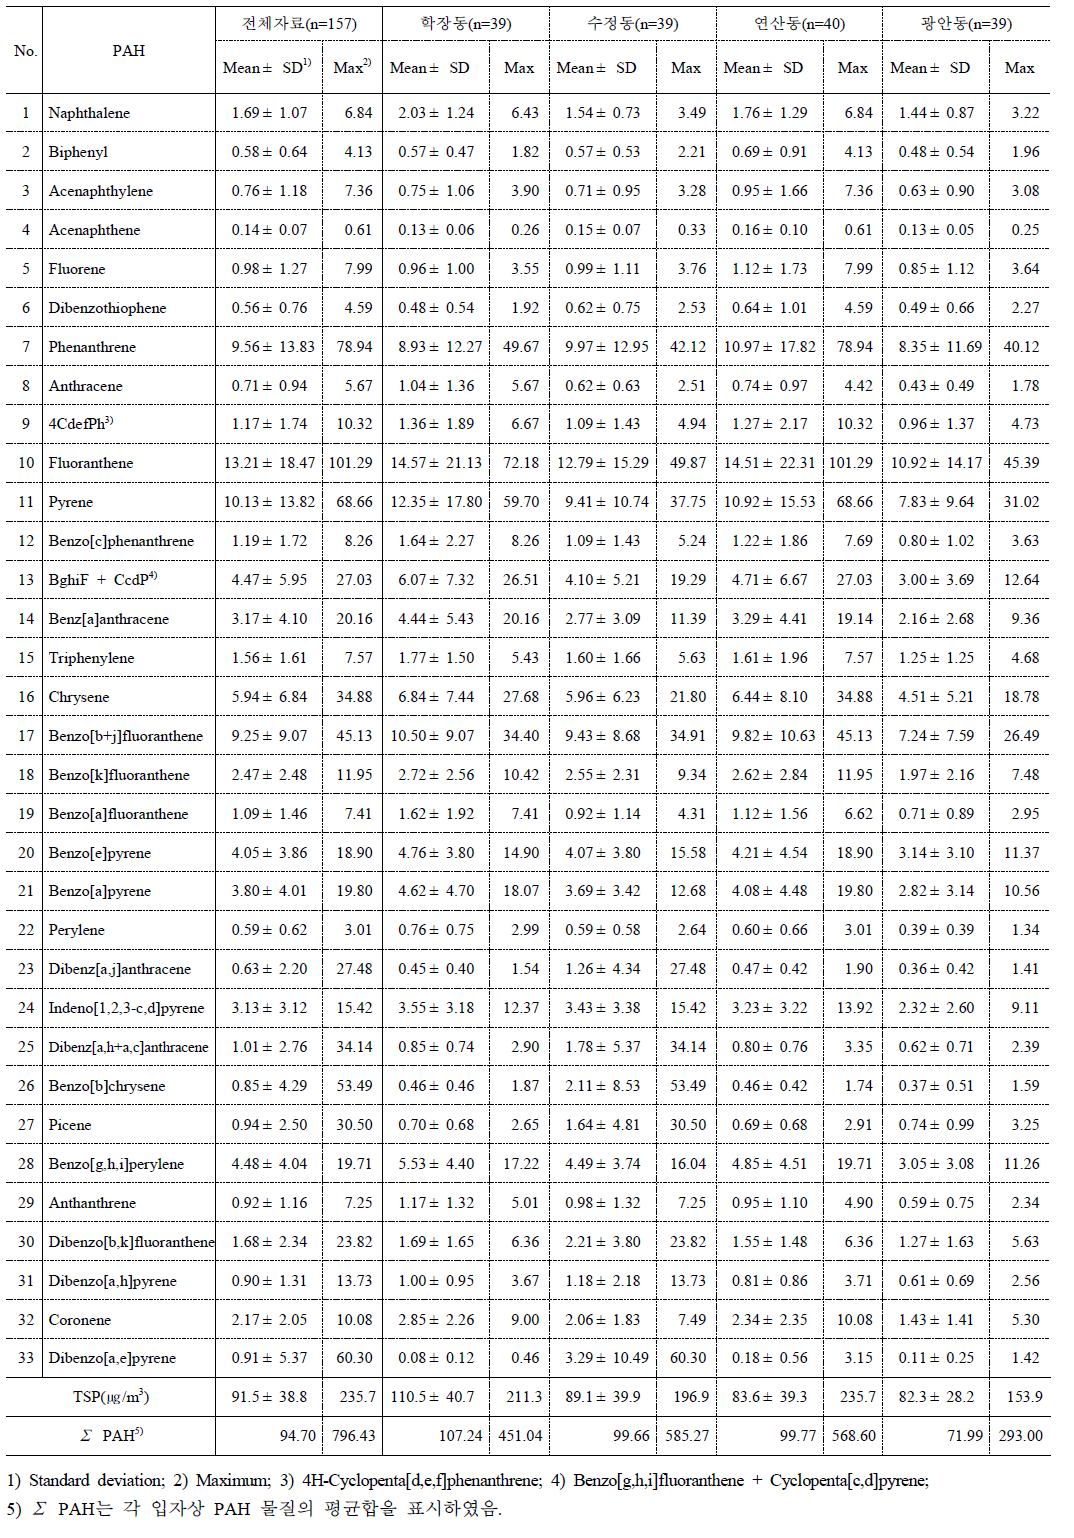 PAH 전체자료의 측정지점별 함량농도 (단위: ㎍/g)